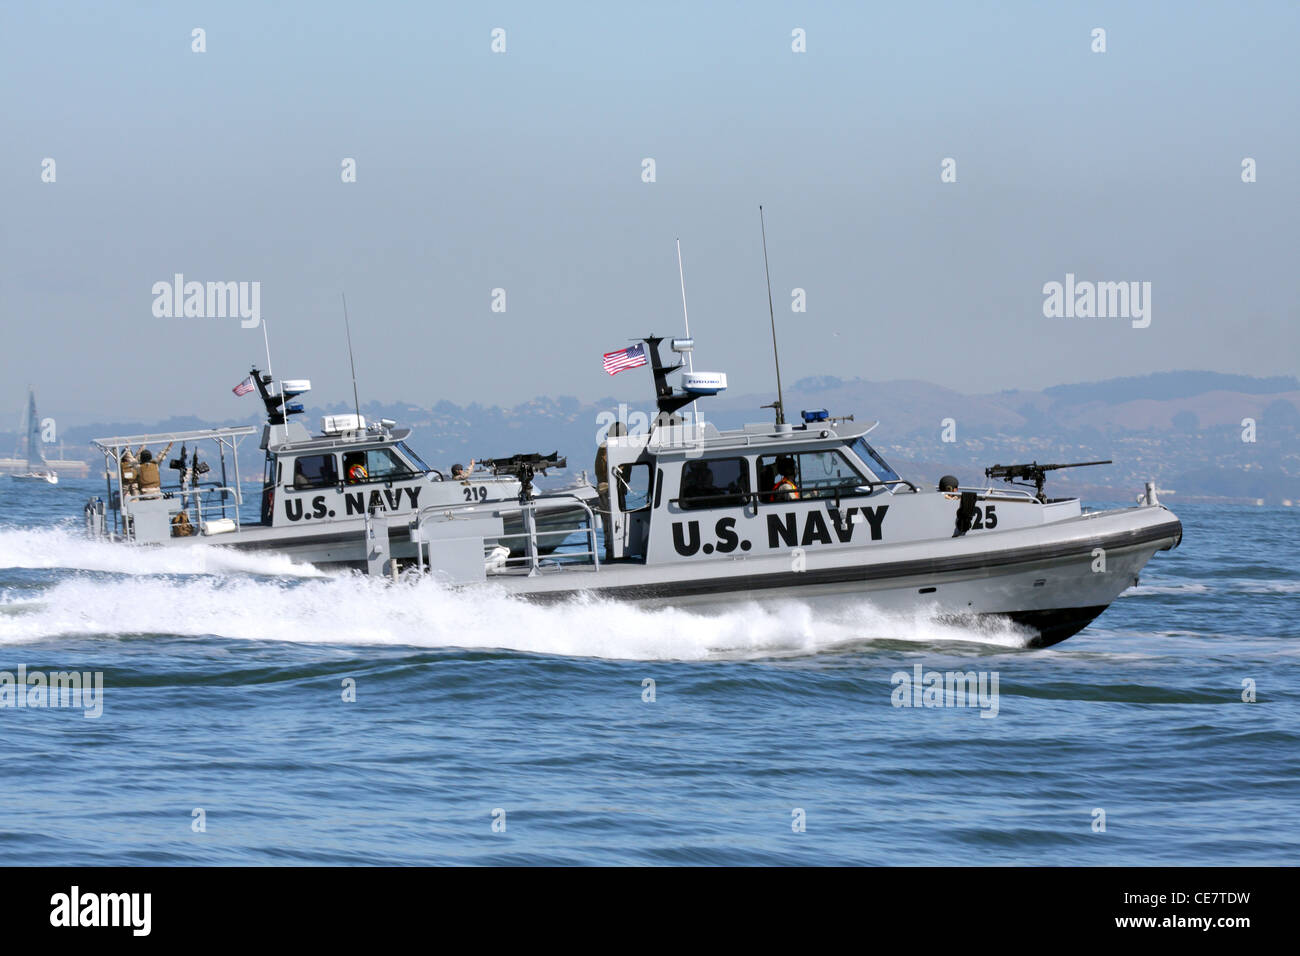 La Marine américaine patrouille des forces de sécurité le front de mer de San Francisco dans une paire de 34 pied arche mer Bateau de sécurité de la Marine. Banque D'Images